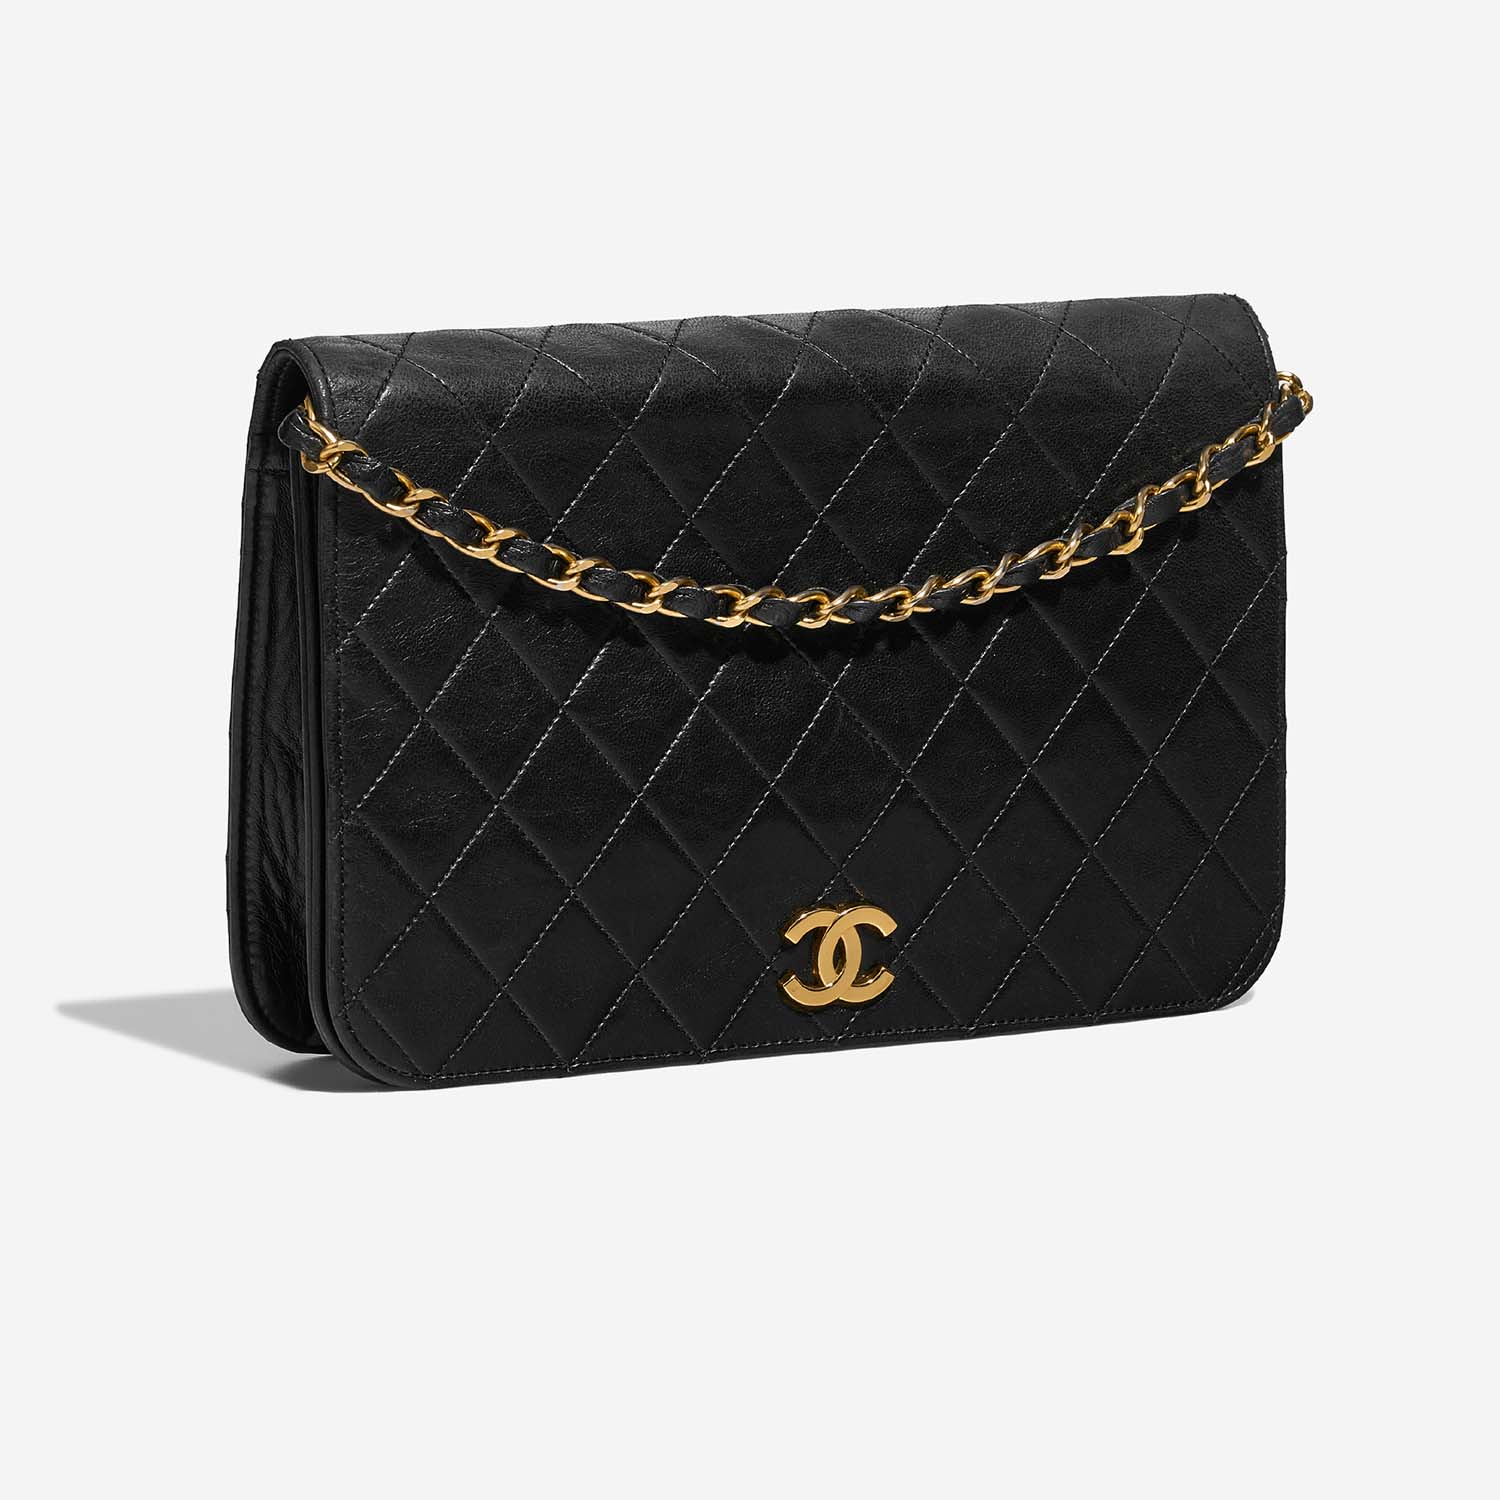 Chanel Timeless Medium Schwarz 6SF S | Verkaufen Sie Ihre Designer-Tasche auf Saclab.com